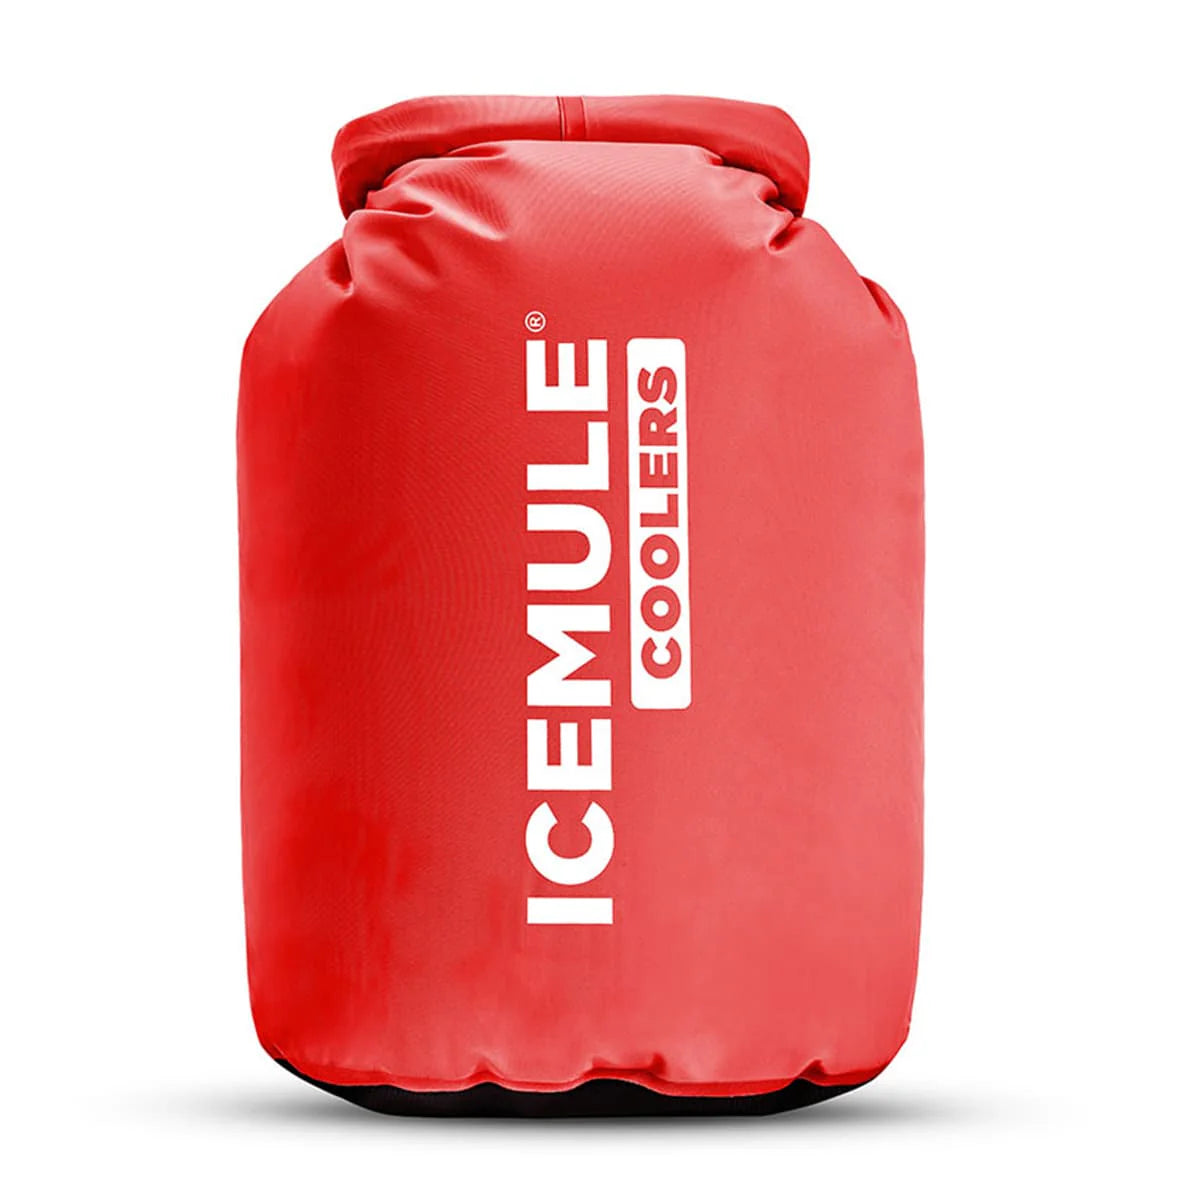 Icemule Classic Large 20L Portable Soft Cooler Bag